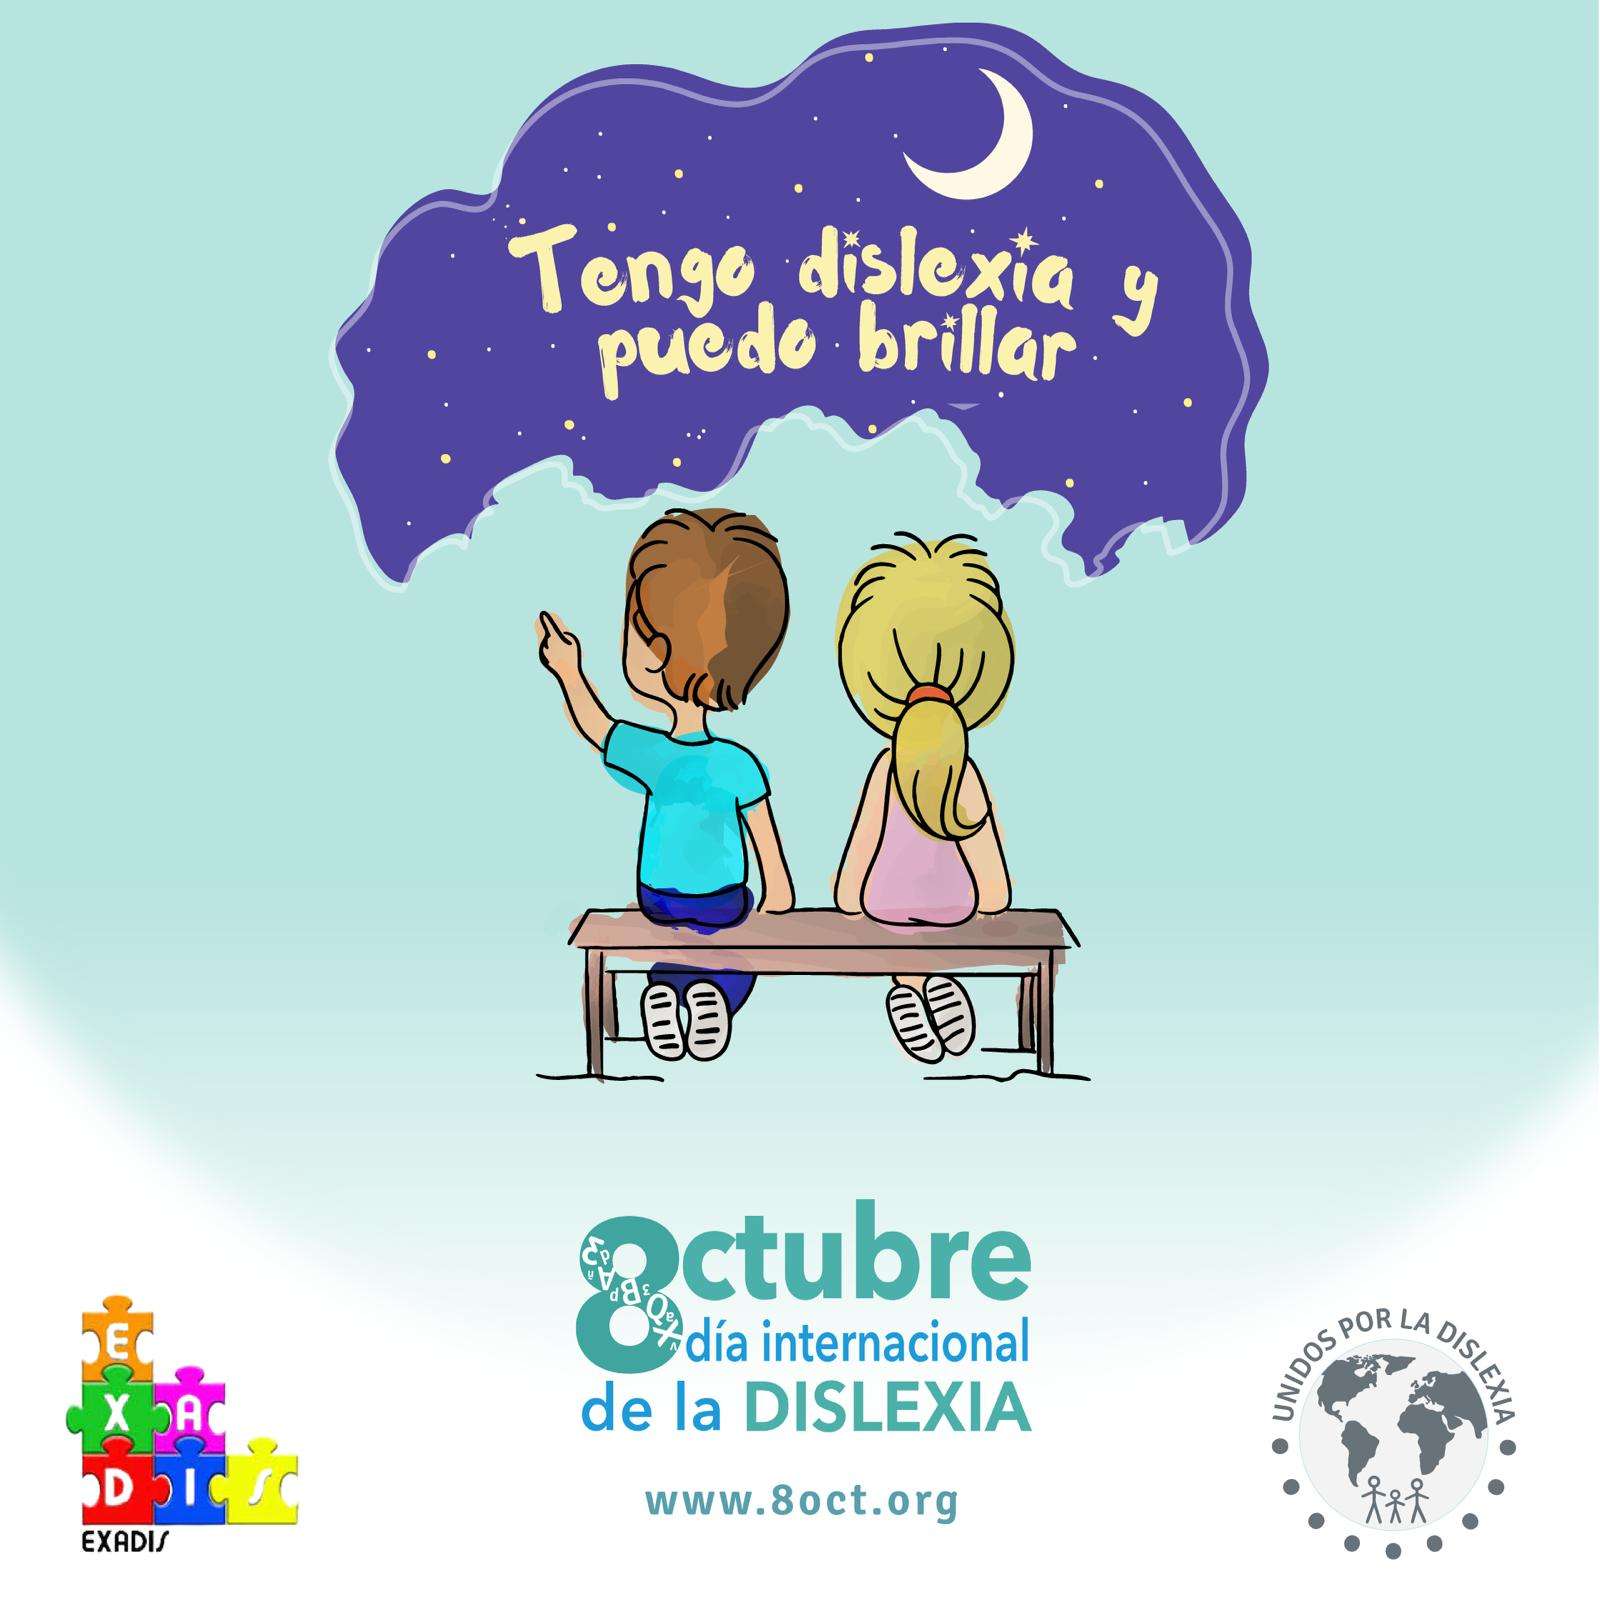 Extremadura busca la unión de la sociedad para visibilizar la dislexia en su día internacional